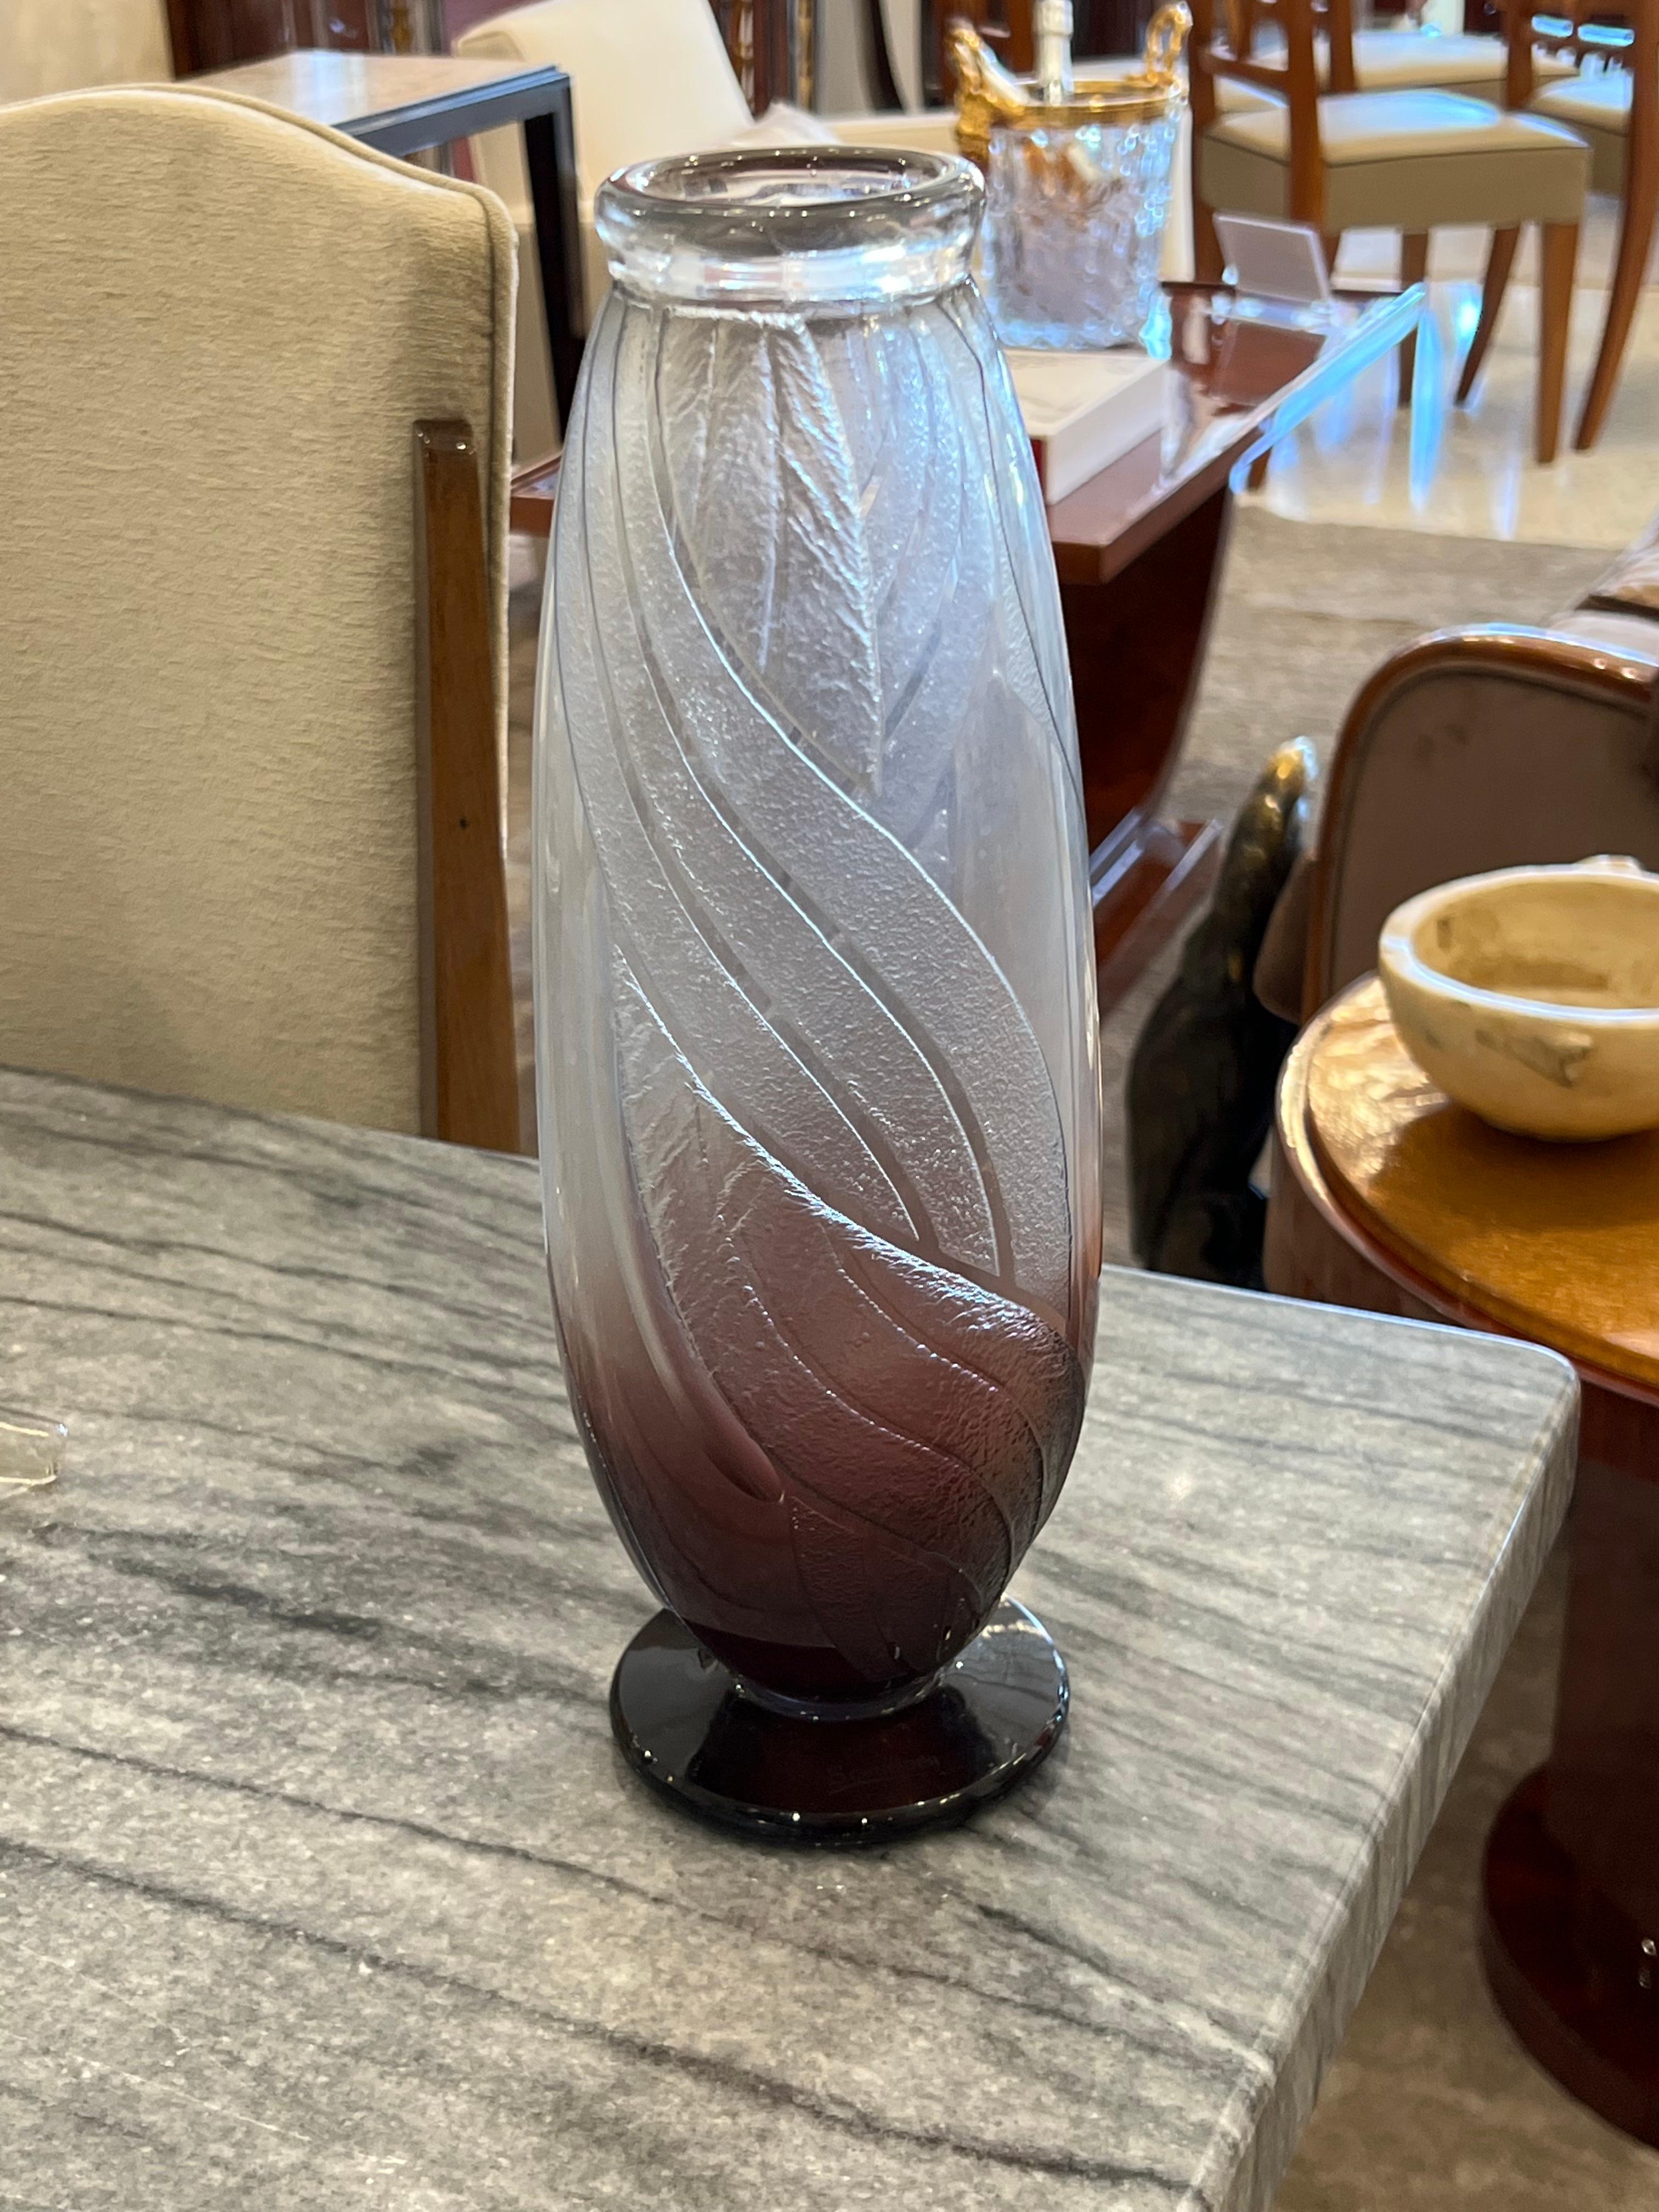 Un vase de forme cylindrique en verre clair avec un dégradé en Magenta conçu par Le Verre Français.  Cette pièce présente un motif torsadé gravé à l'acide et un pied Magenta.

Charles Schneider était un verrier renommé pendant la période de l'Art